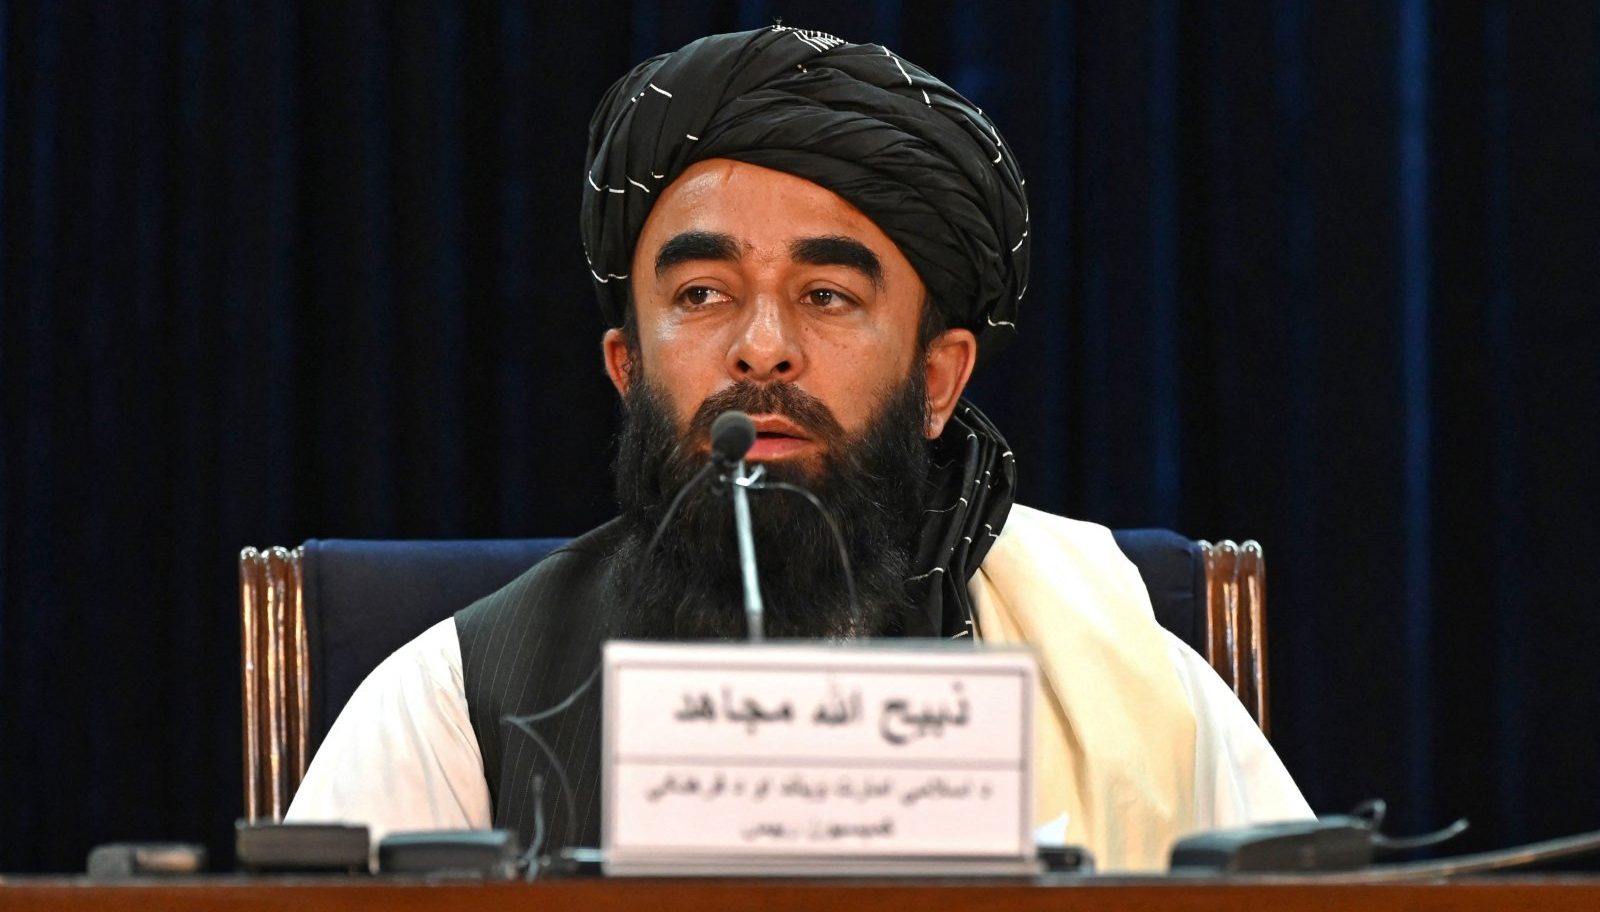 талибанский представитель Забихулла Муджахид